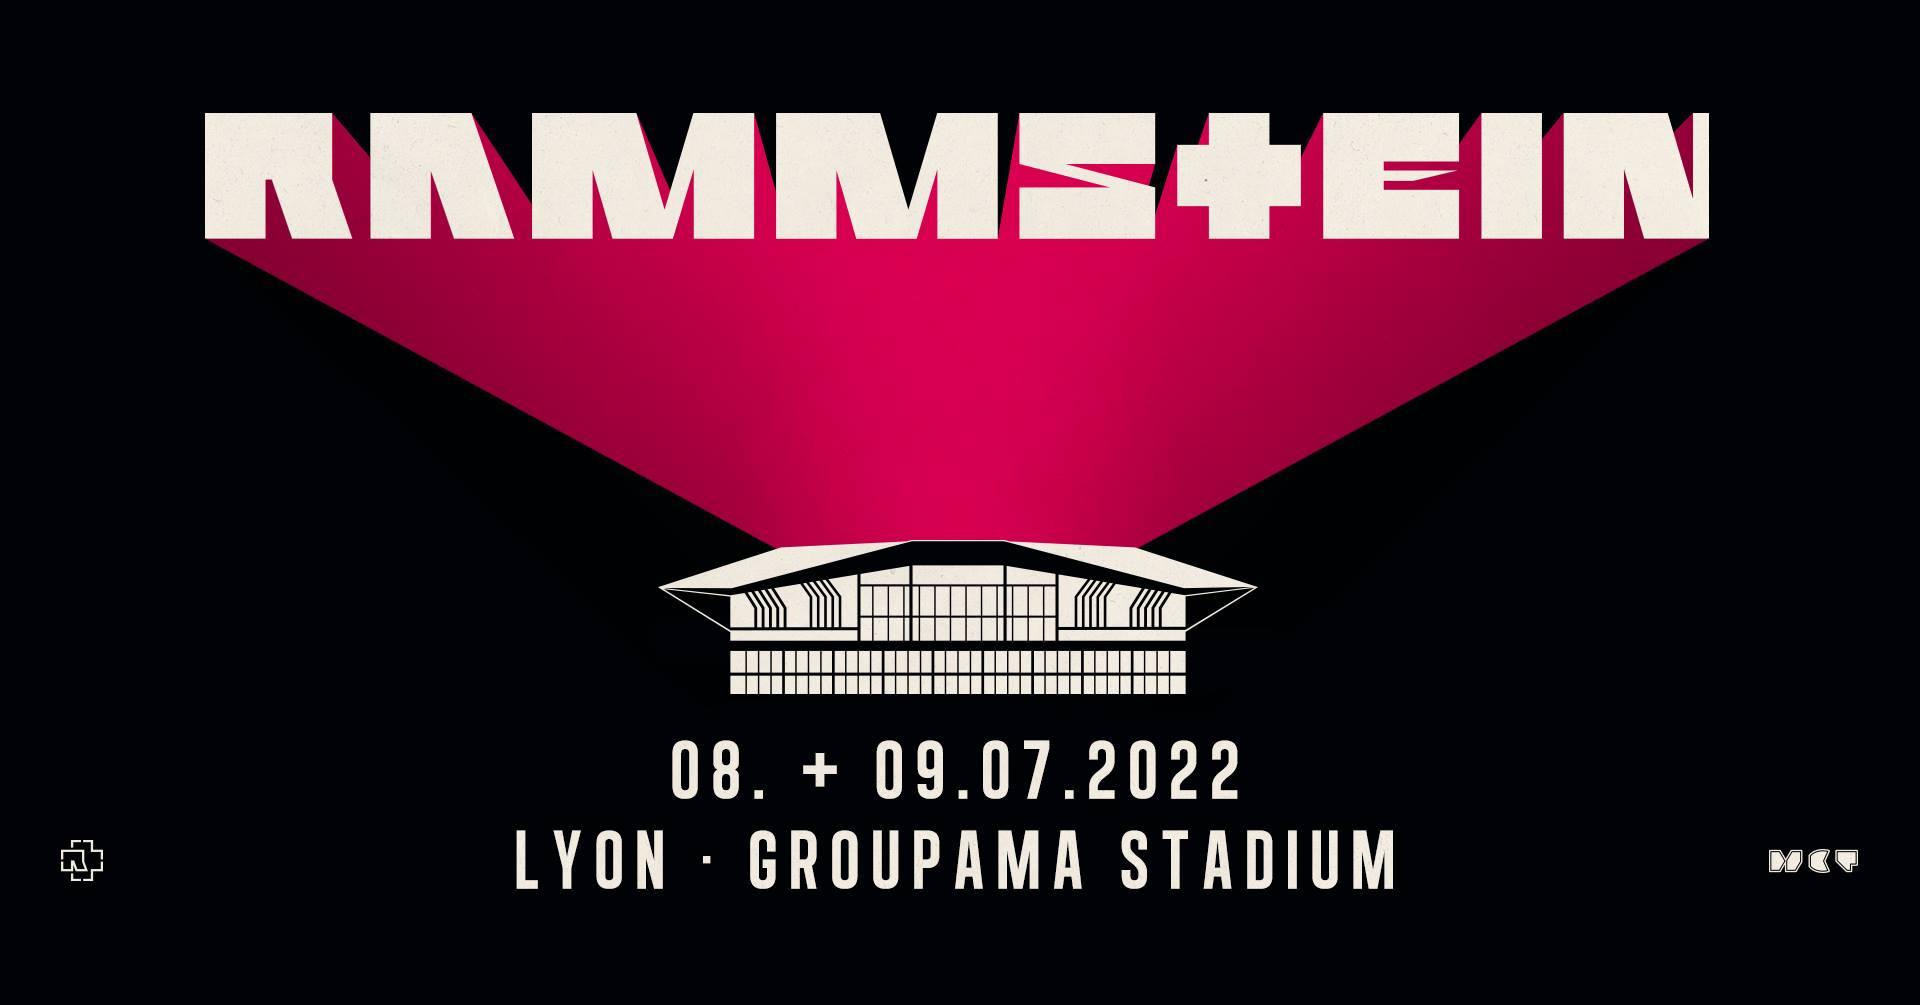 Rammstein lyon 2022